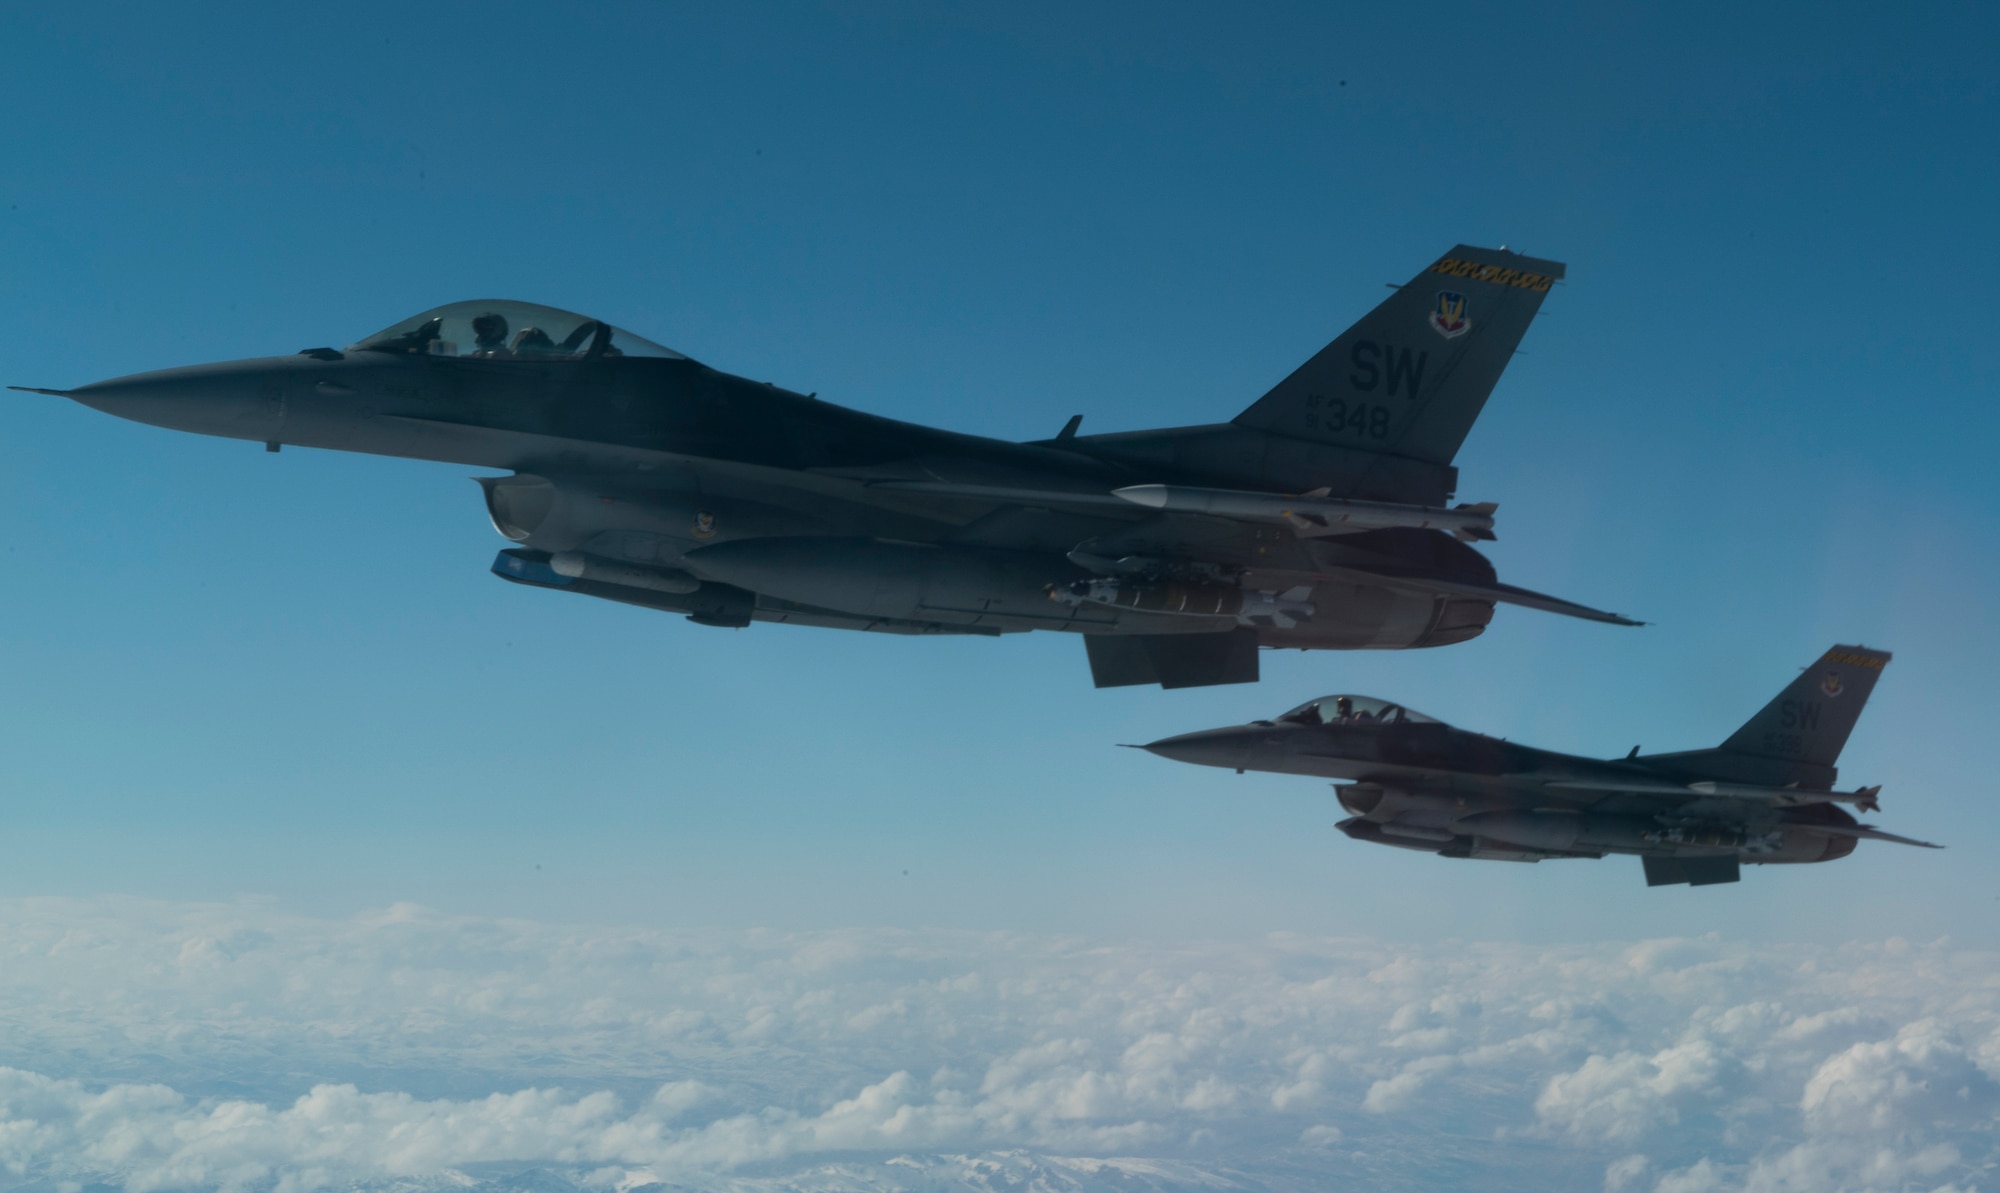 Photos of F-16 aircraft.